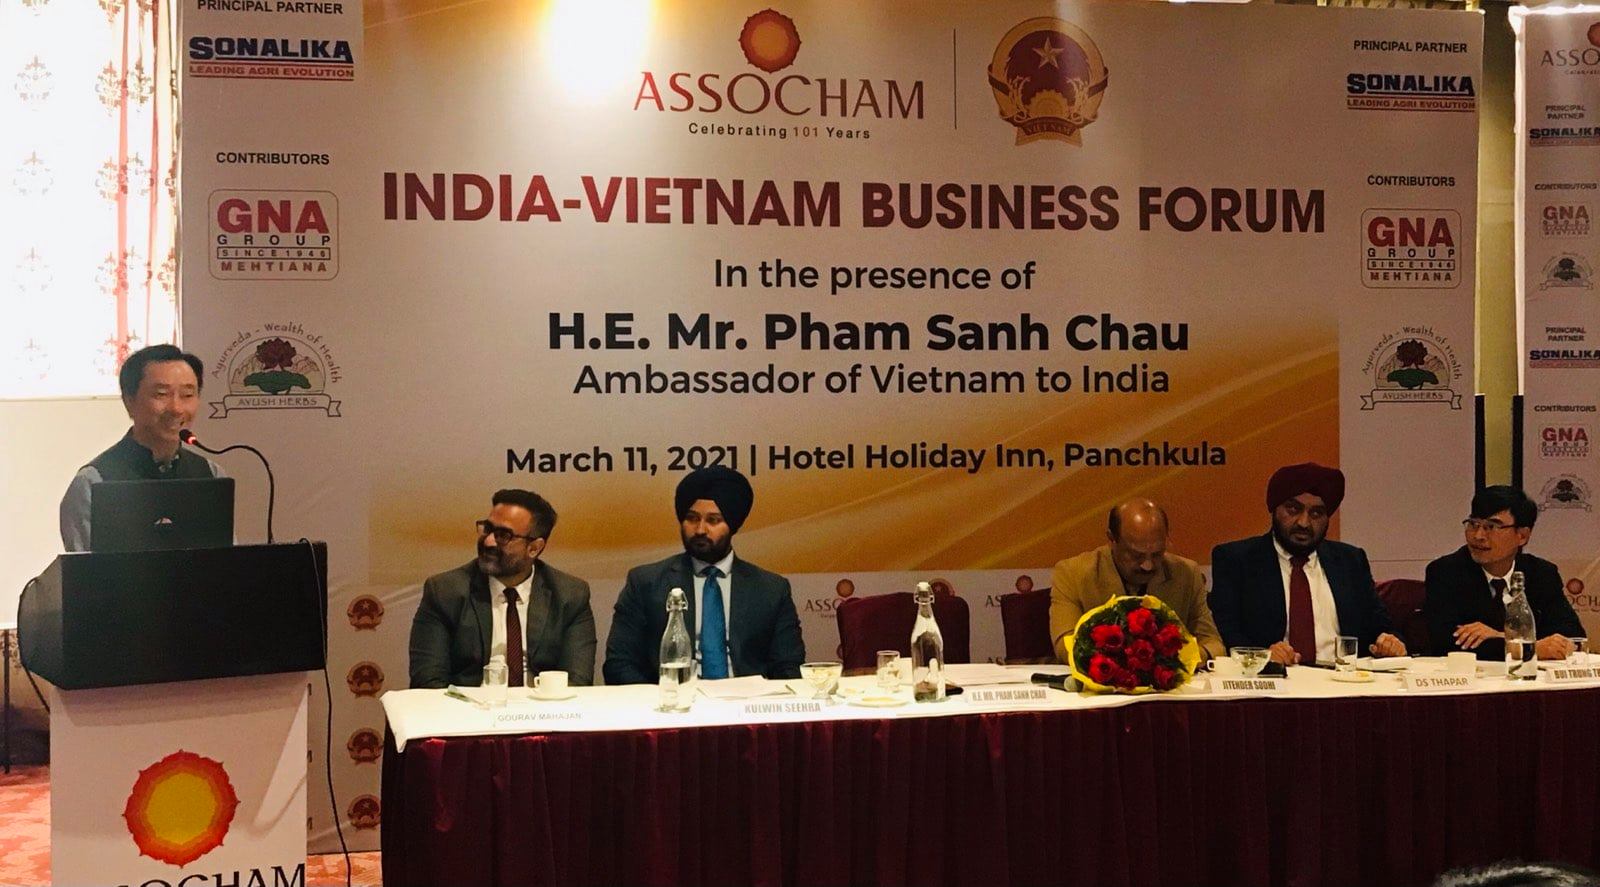 Phát biểu tại diễn đàn, Đại sứ Việt Nam tại Ấn Độ Phạm Sanh Châu đã nhấn mạnh mối quan hệ đặc biệt giữa hai nước Việt Nam và Ấn Độ